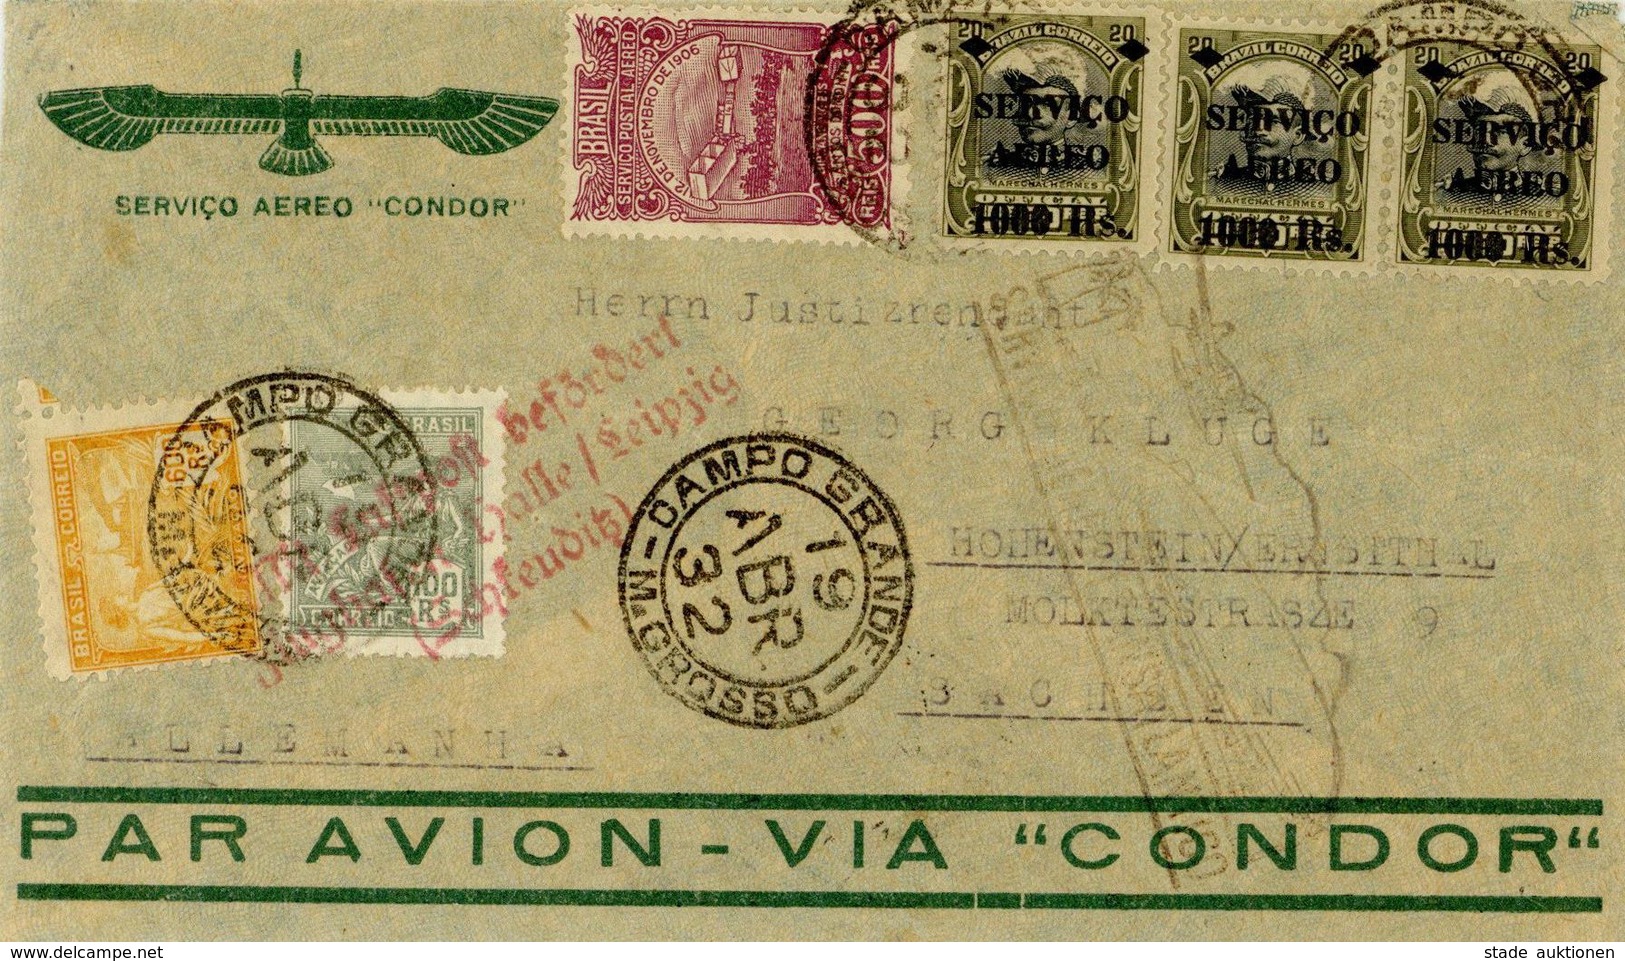 Zeppelinpost, 1932 3. Südamerikafahrt Brasilianische Post Von Matto Grosso über Pernambuco Und Friedrichshafen Sowie Flu - Zeppeline